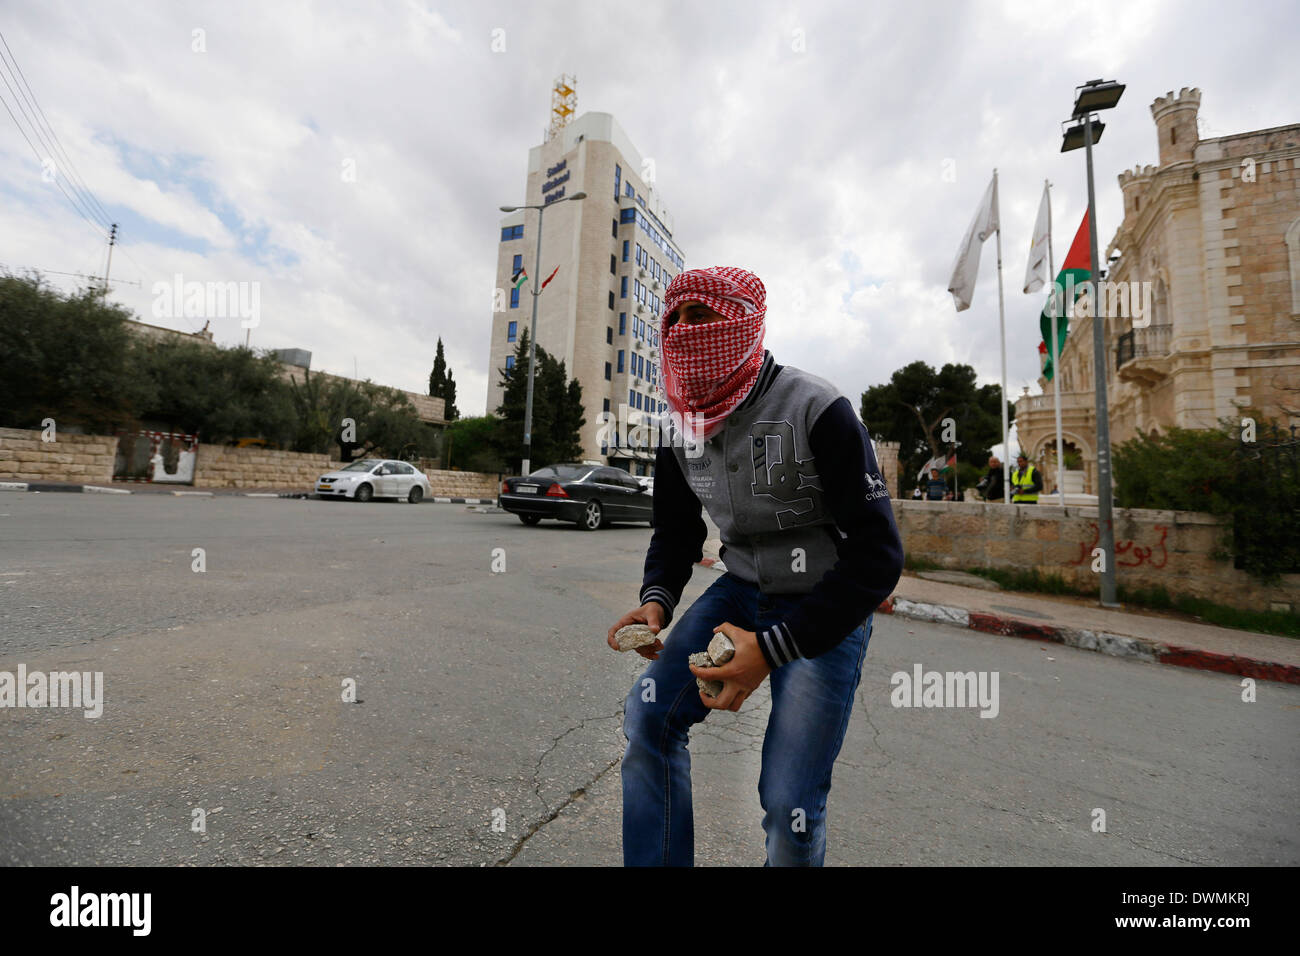 Palestiniens masqués ont lancé des pierres sur les soldats israéliens, au cours d'affrontements. Banque D'Images